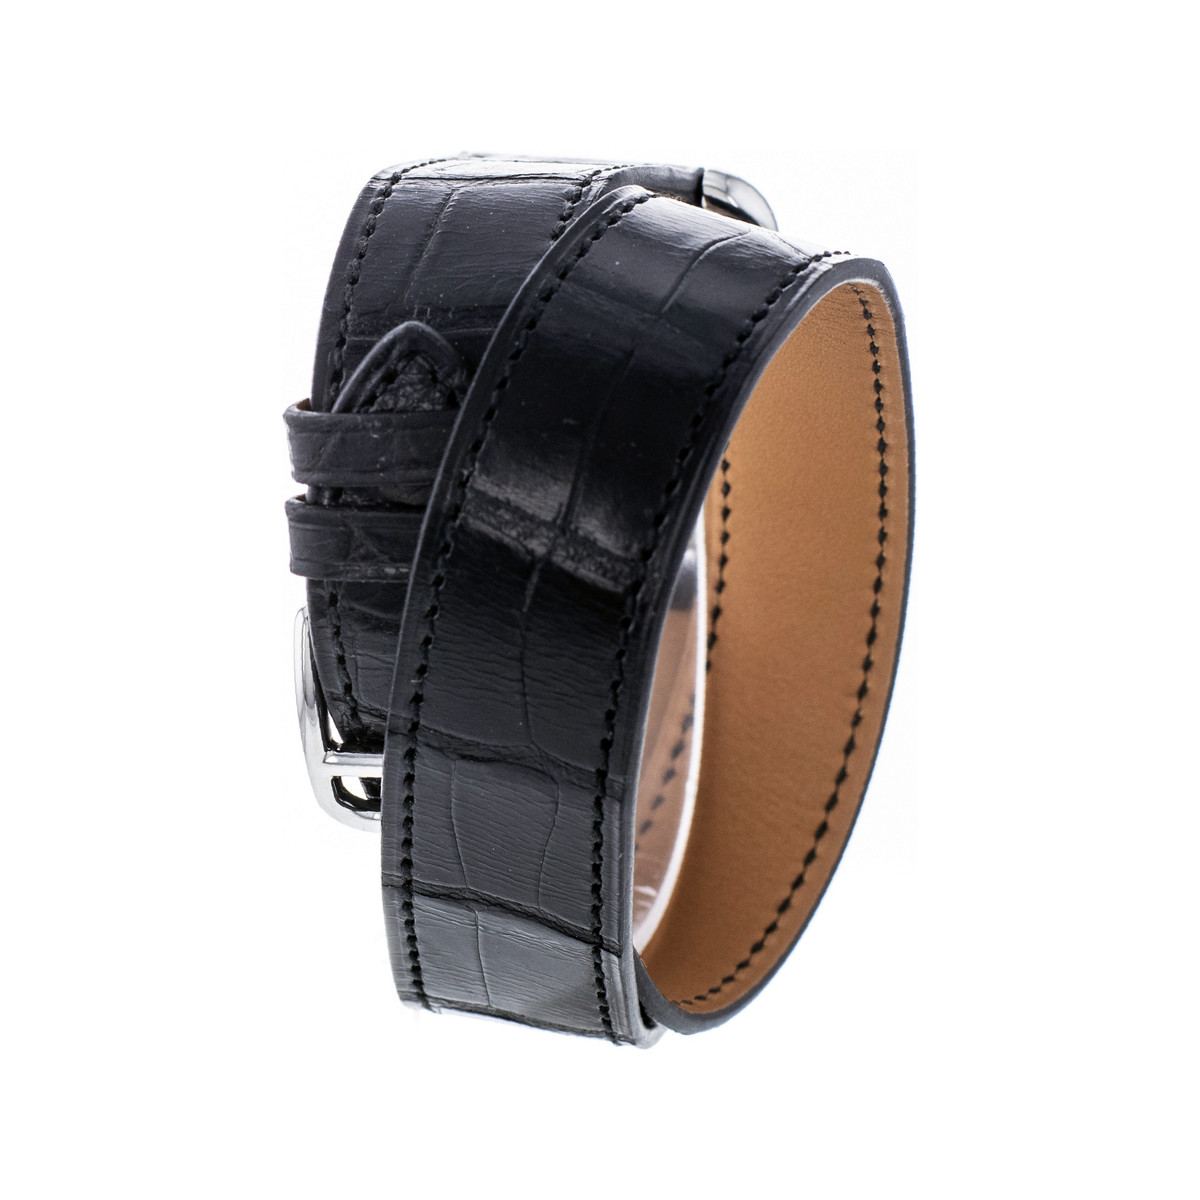 Montre d'occasion Hermès Cape Cod femme acier bracelet cuir noir - vue 3